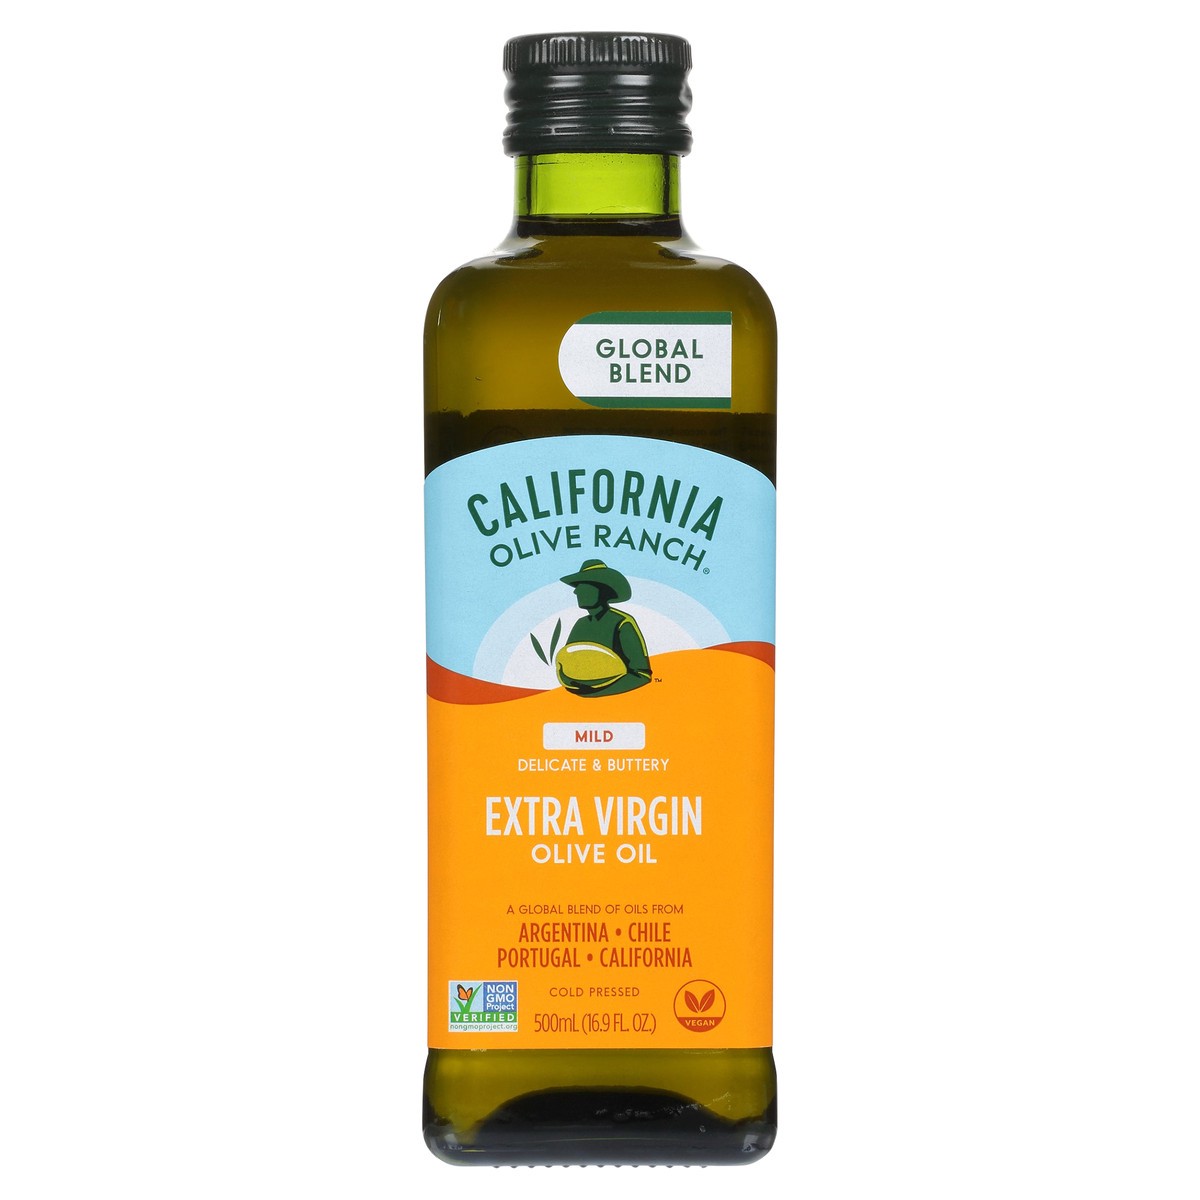 slide 1 of 21, California Olive Ranch Global Blend Mild Extra Virgin Olive Oil - 16.9 fl oz, 